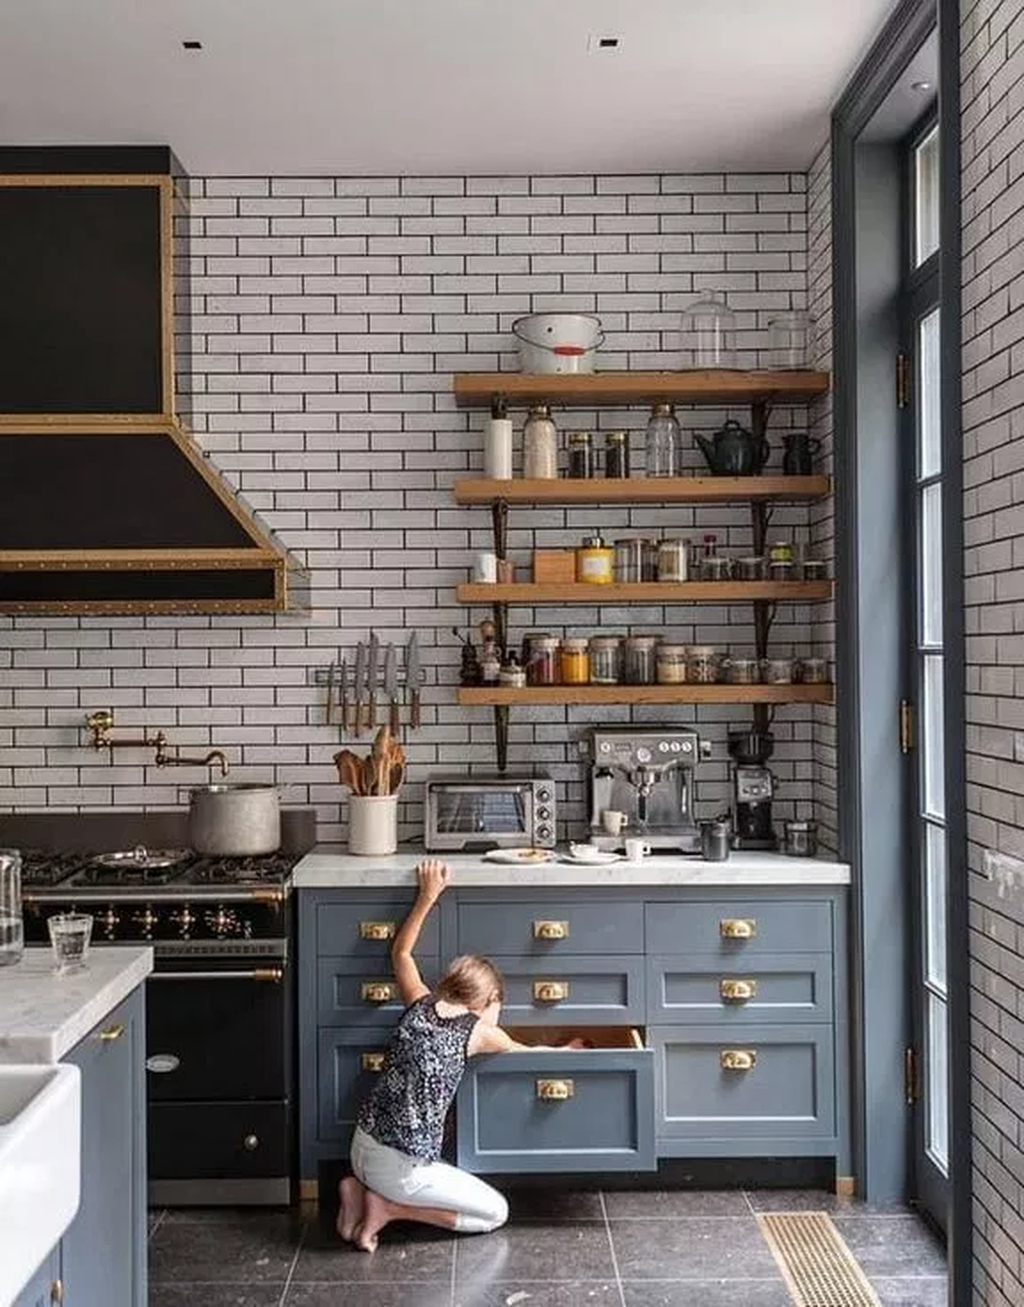 Wonderful Industrial Kitchen Shelf Design Ideas To Organize Your Kitchen12